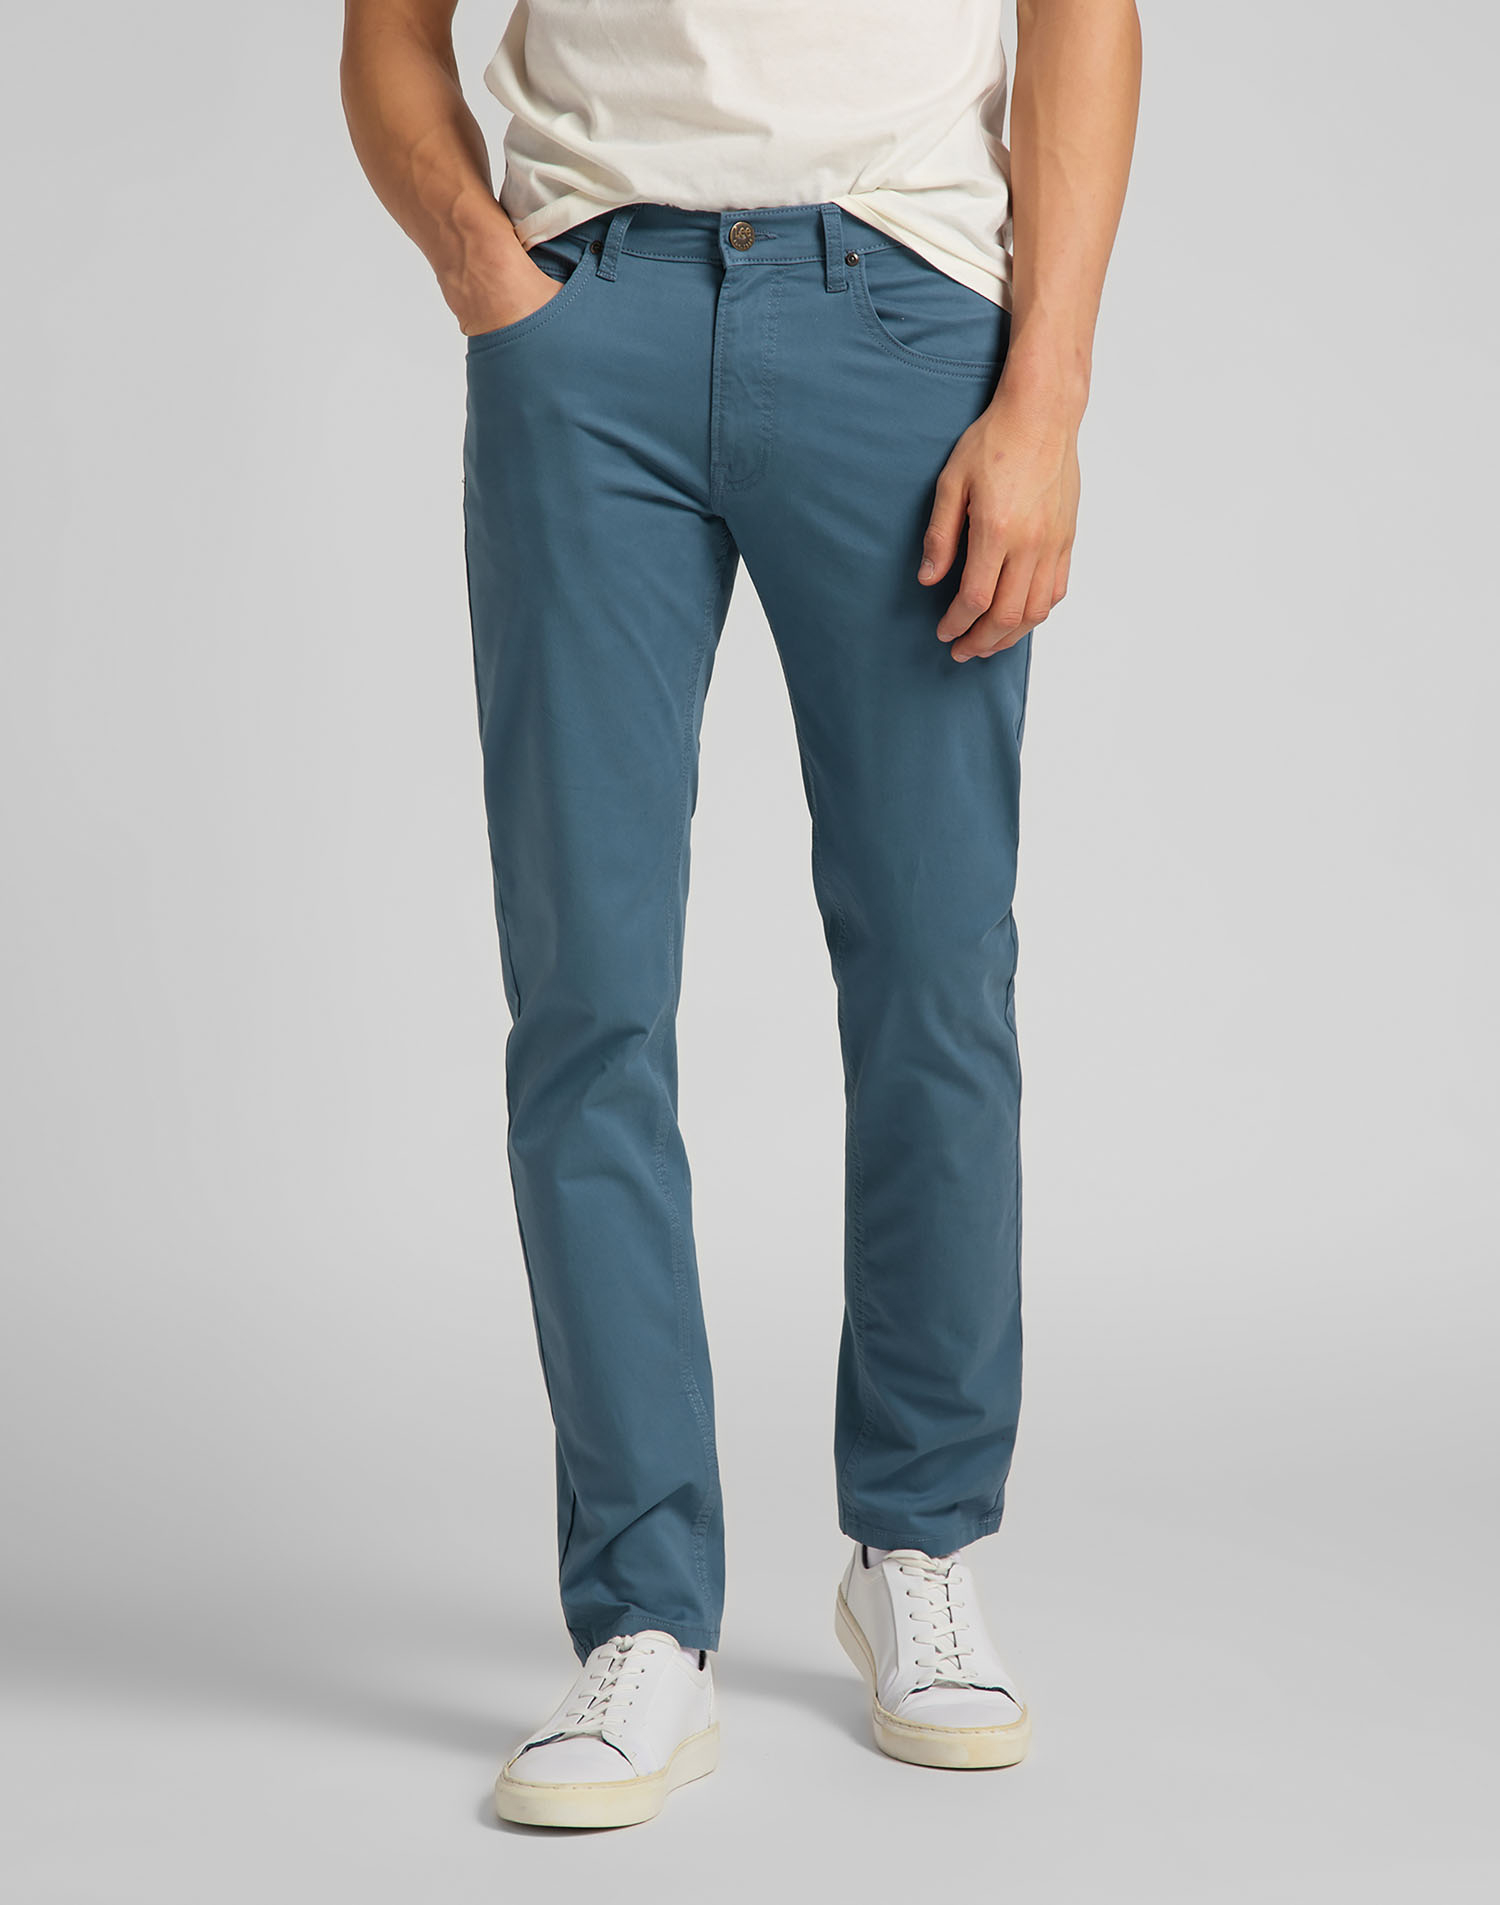 Lee Daren zip regular pantalons texans de gavardina d'home L707LA53 blau